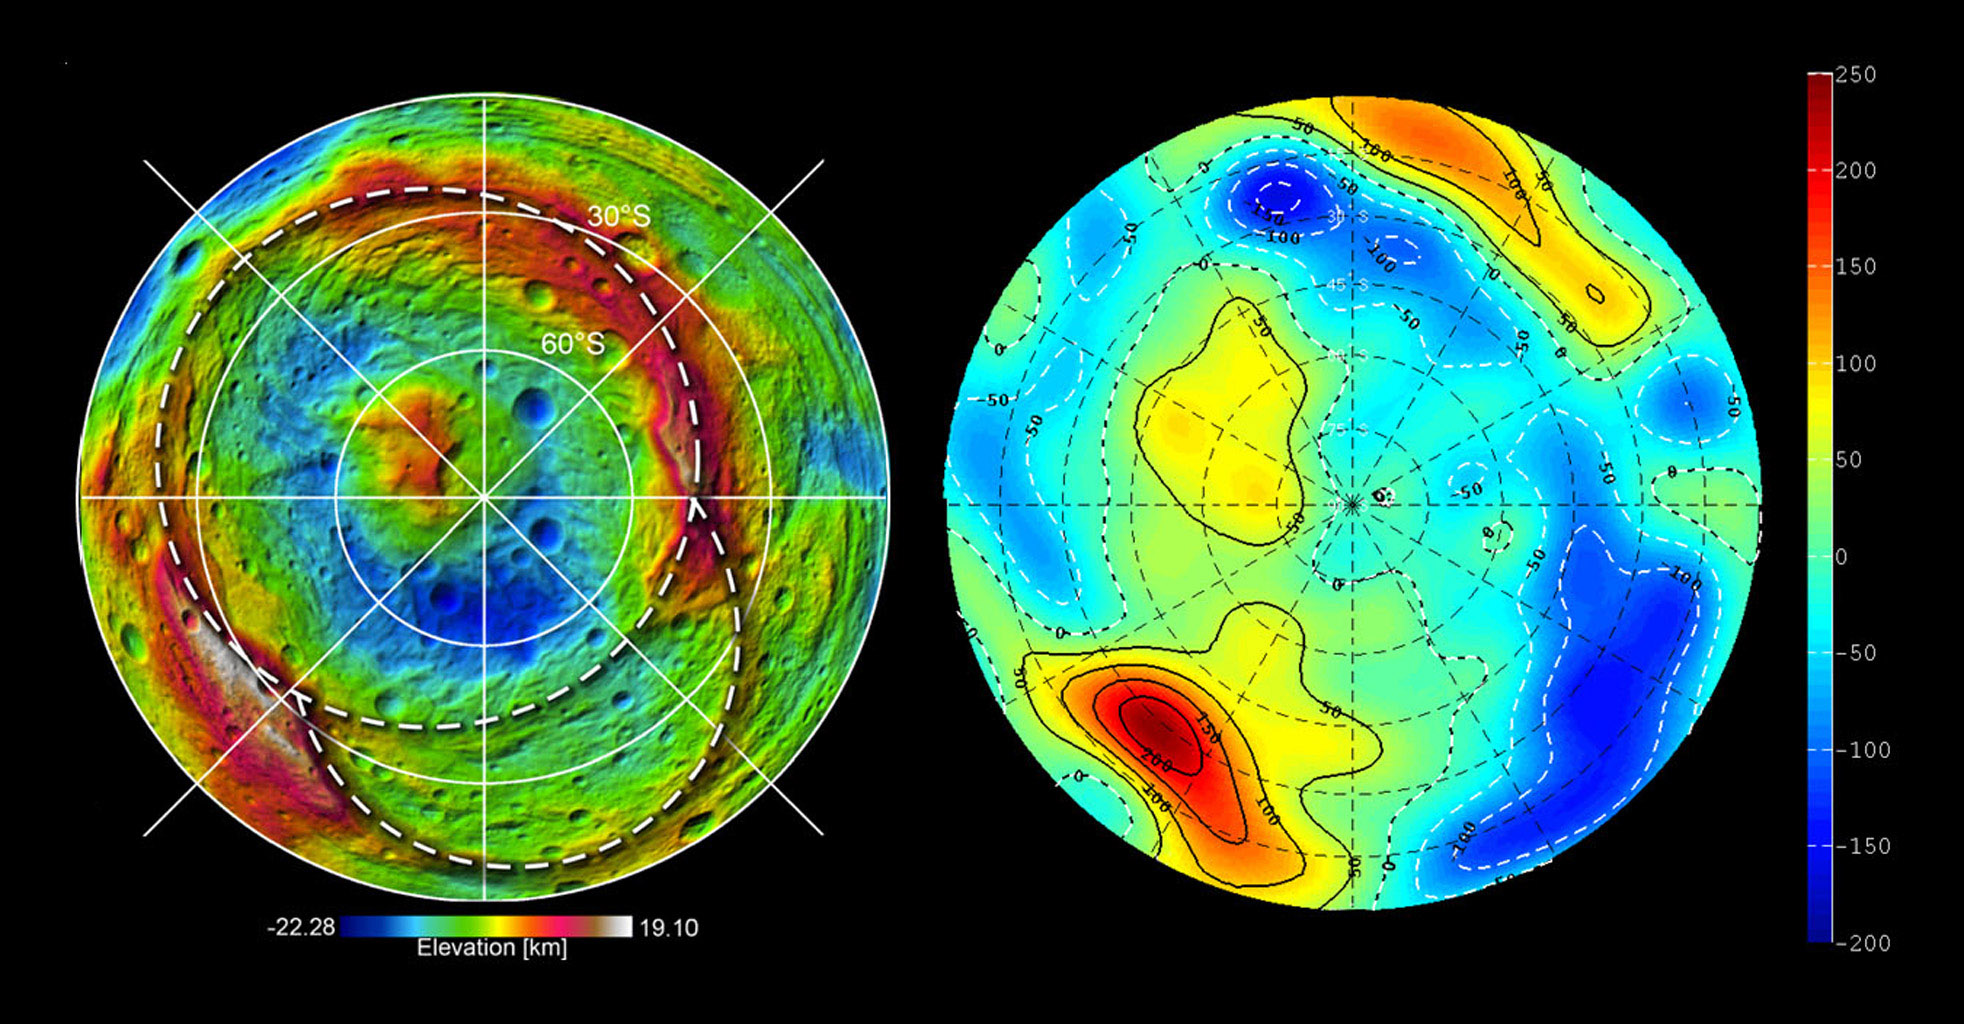 Shape and Gravity of Vesta's South Pole